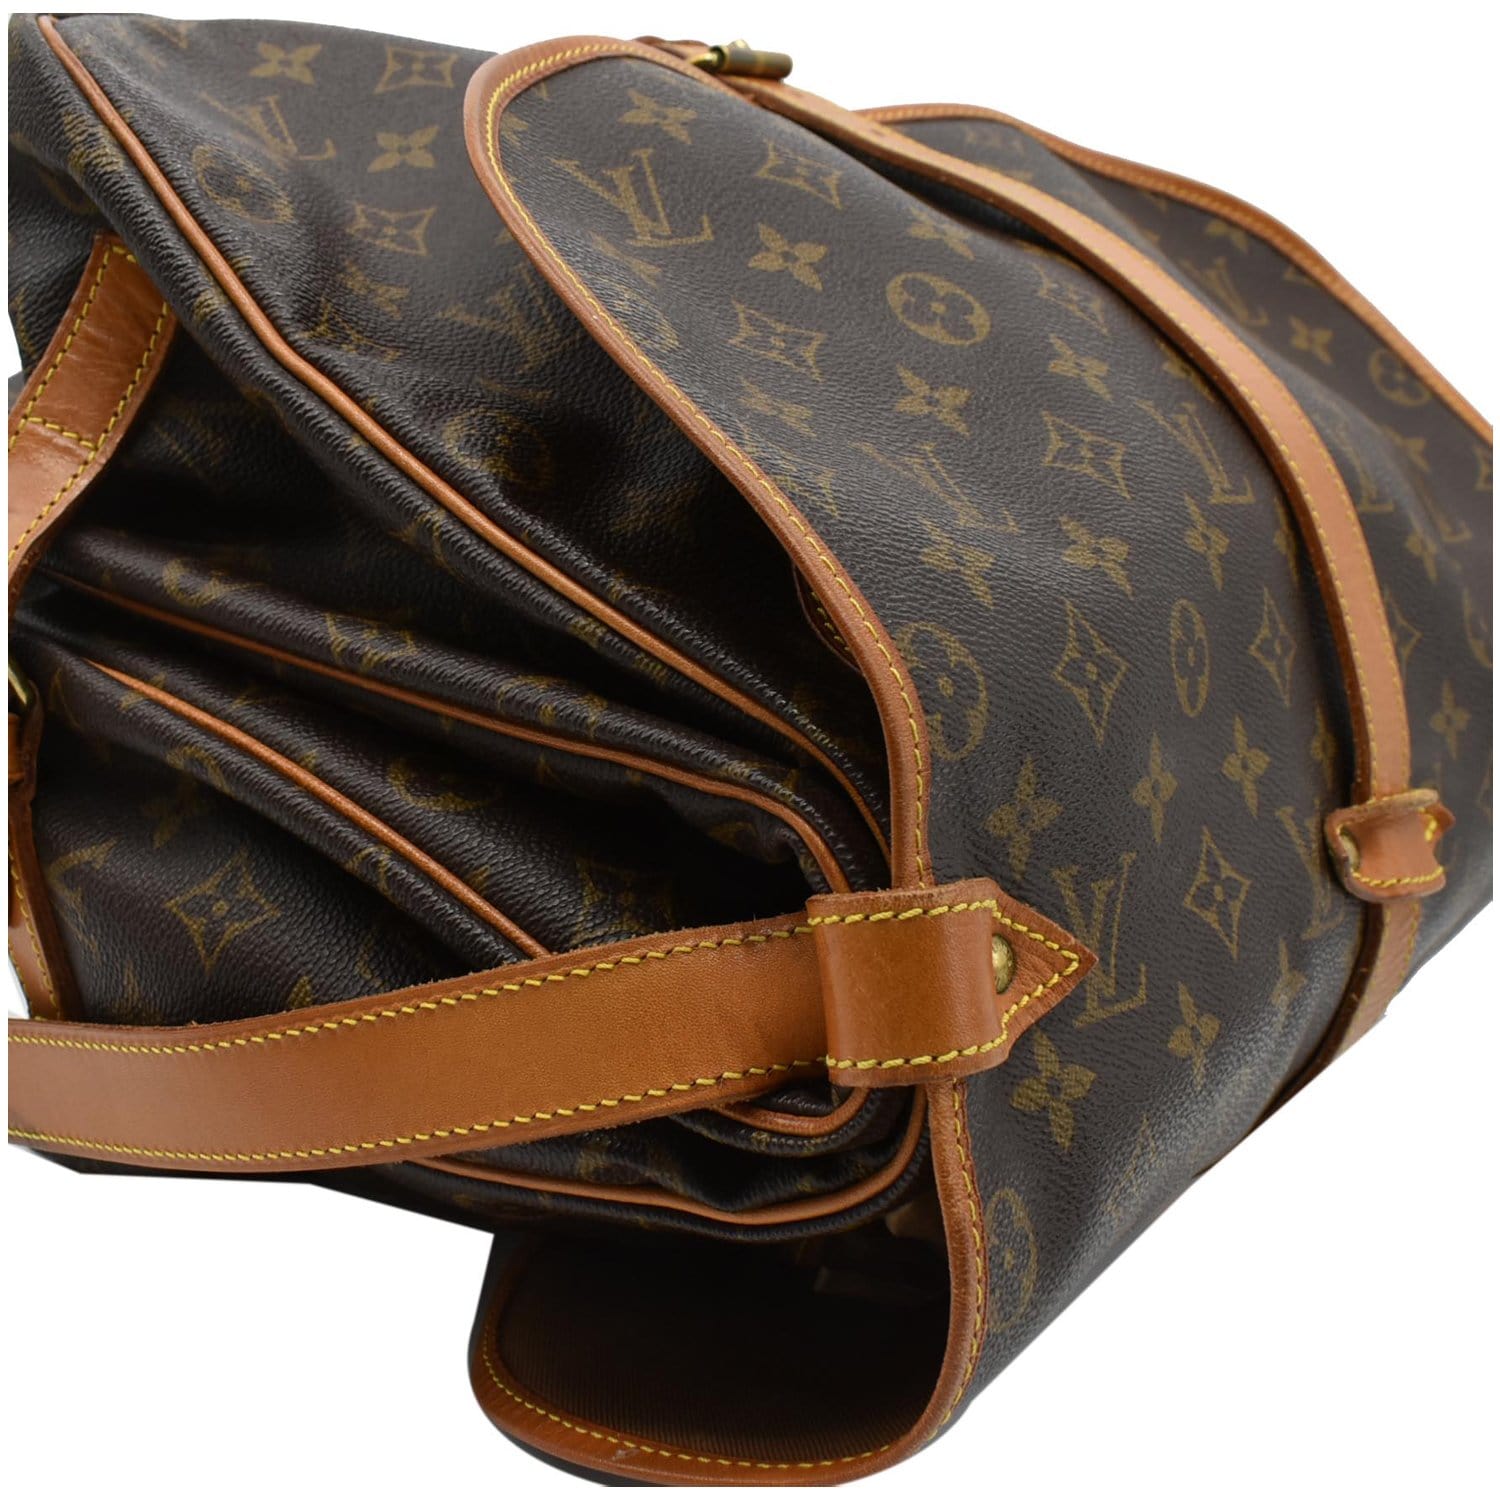 Rush Sale! Authentic Louis Vuitton Saumur 35 Sling Bag, Luxury